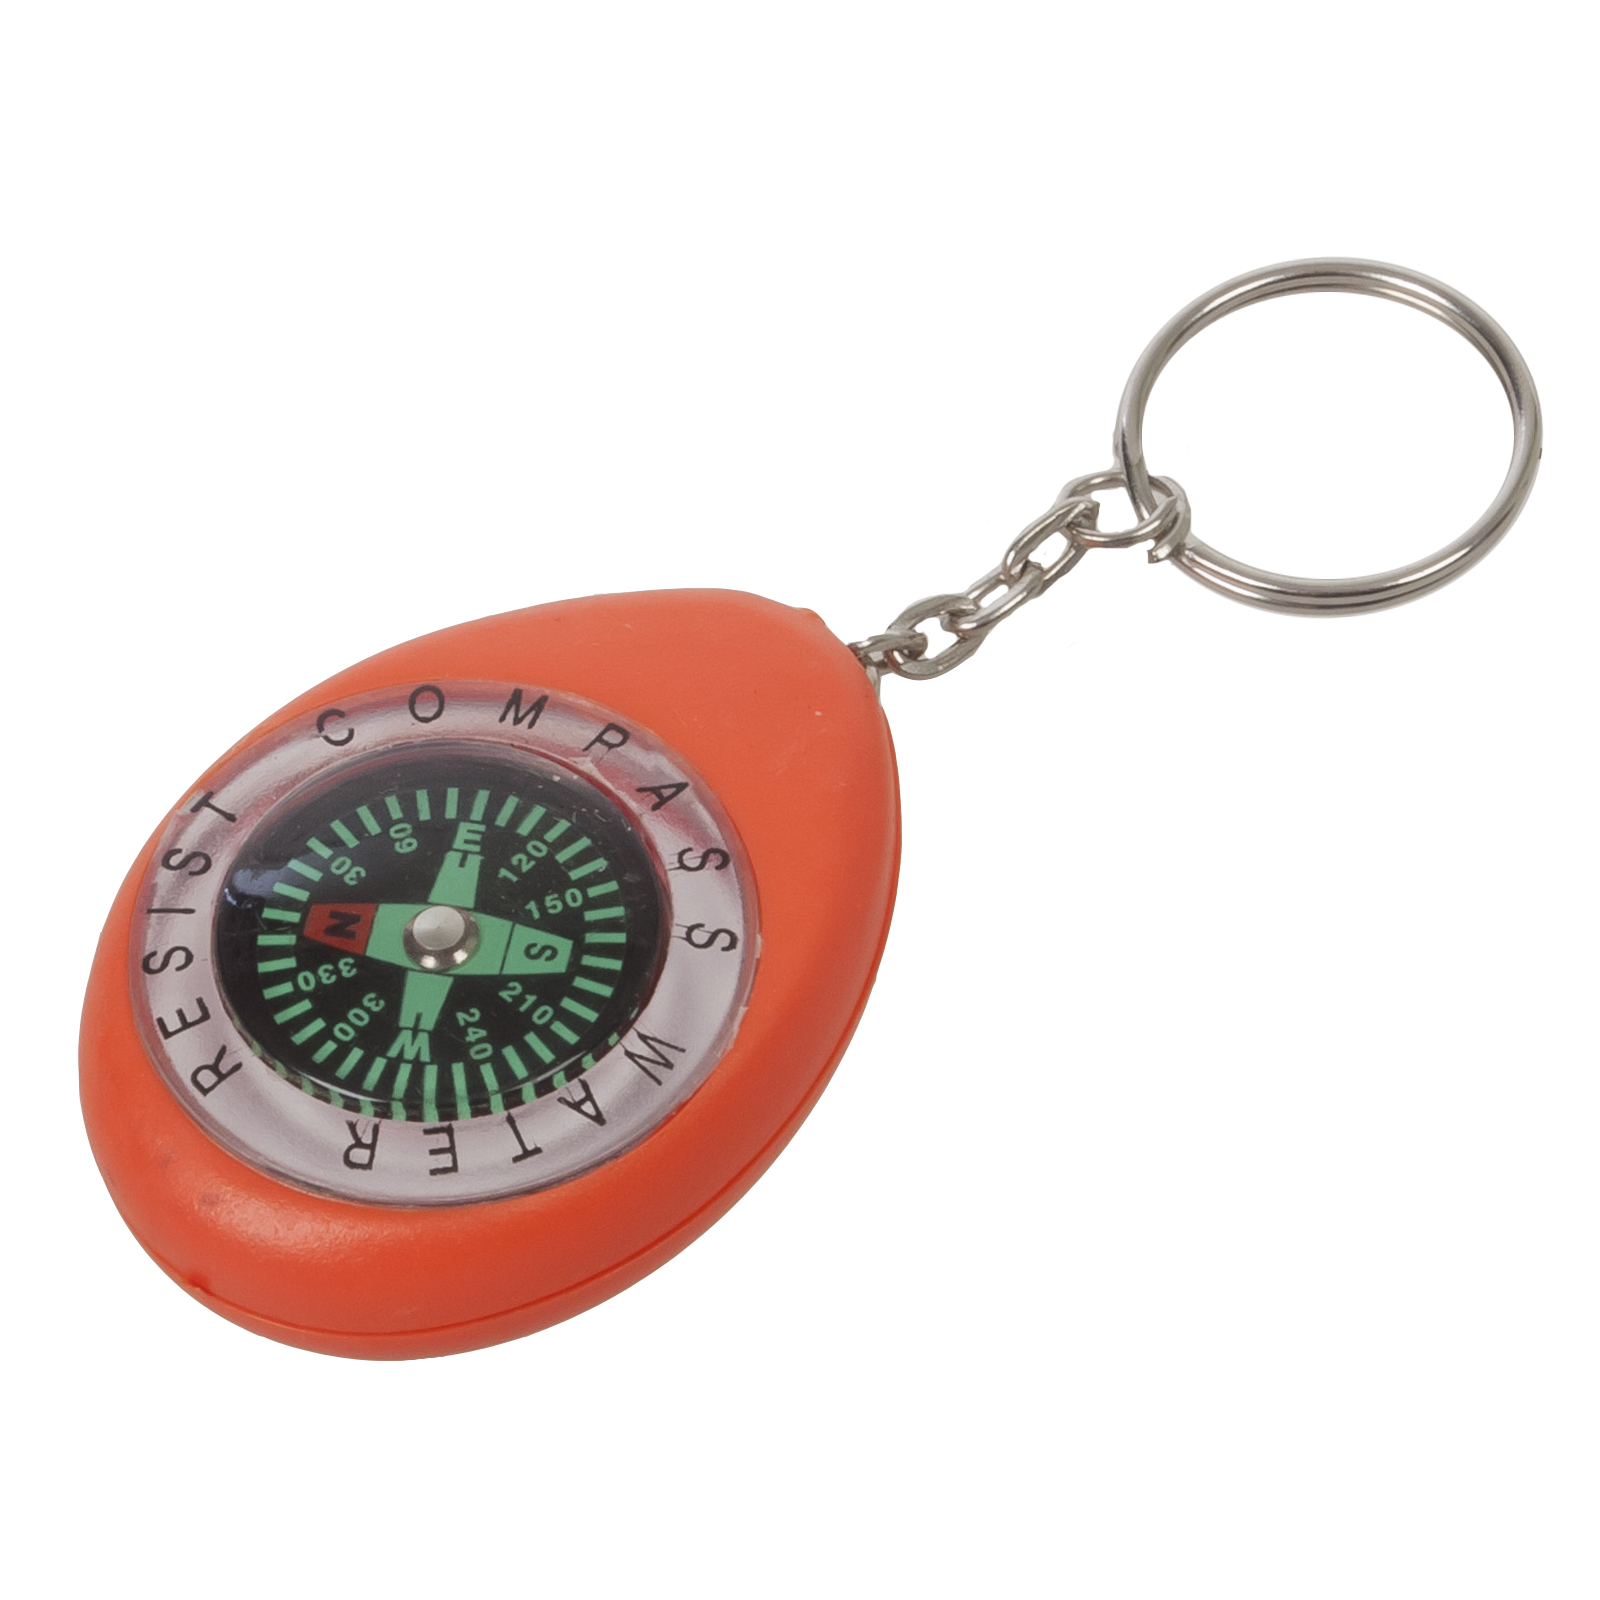 Оранжевый брелок с компасом K280 - купить онлайн